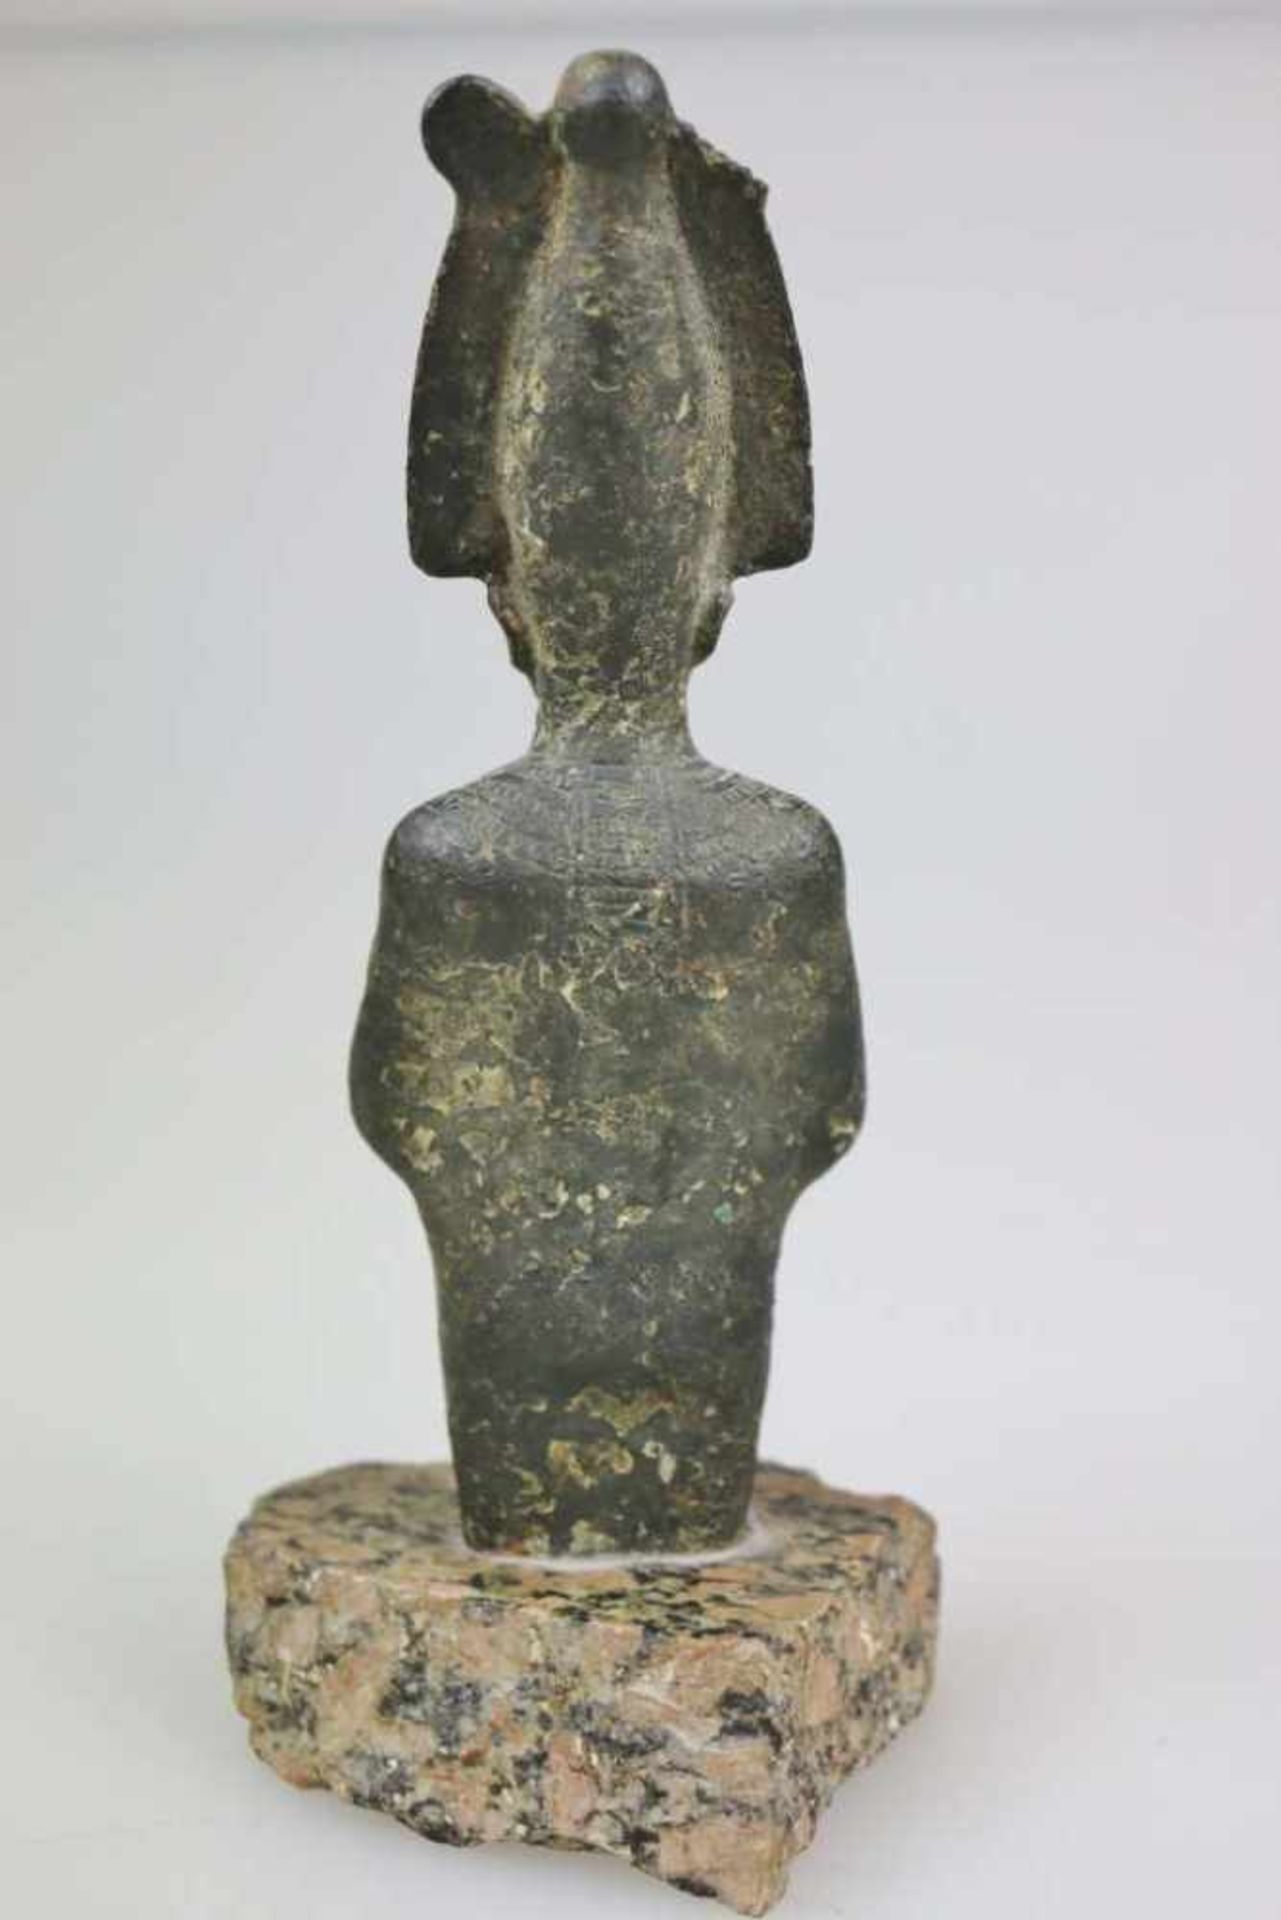 Statuette des Osiris, Ägypten, wohl 25. Dynastie, ca. 700 vor Chr., Bronzeguss. Höhe ohne Sockel: - Bild 3 aus 3